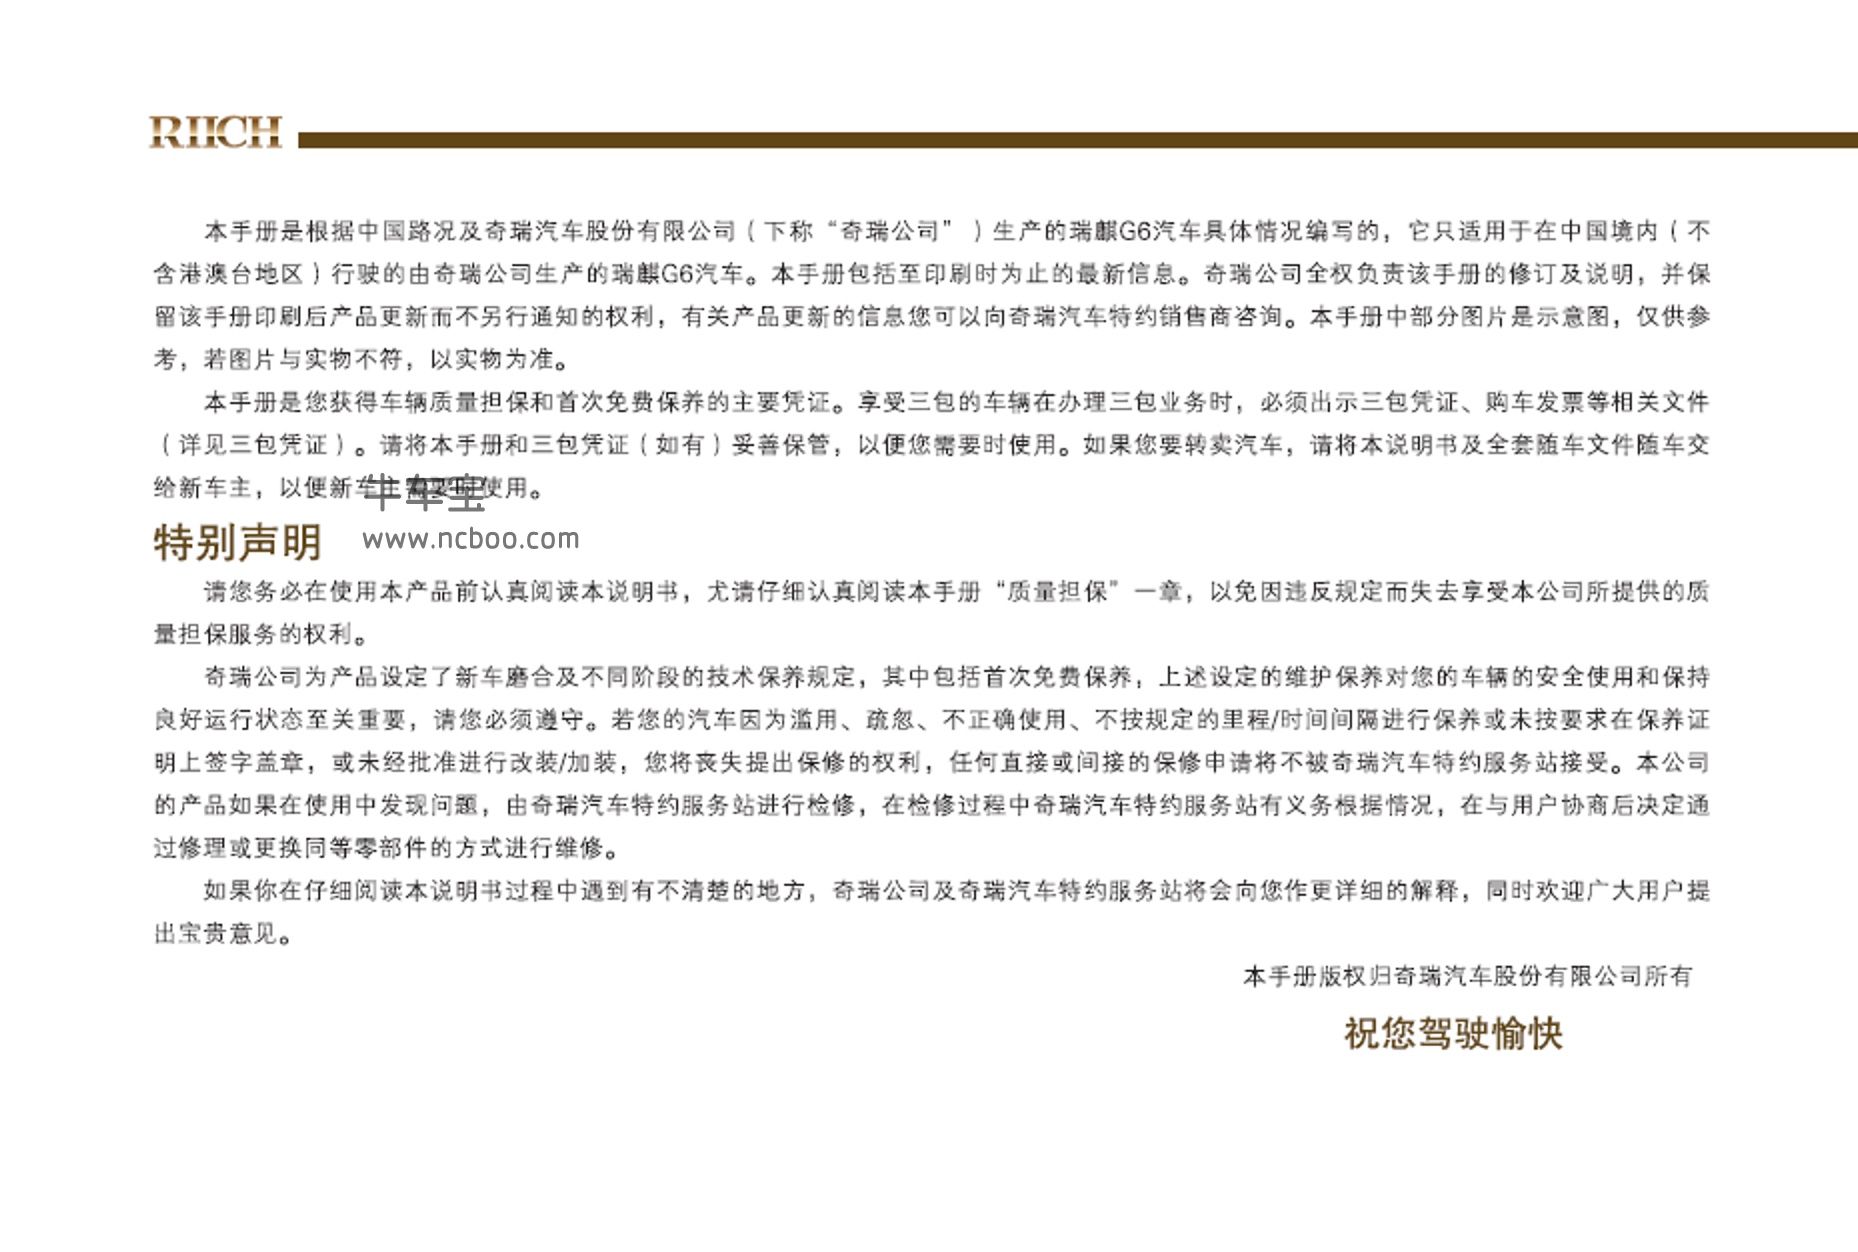 2011款瑞麒G6使用说明书主手册pdf电子版下载